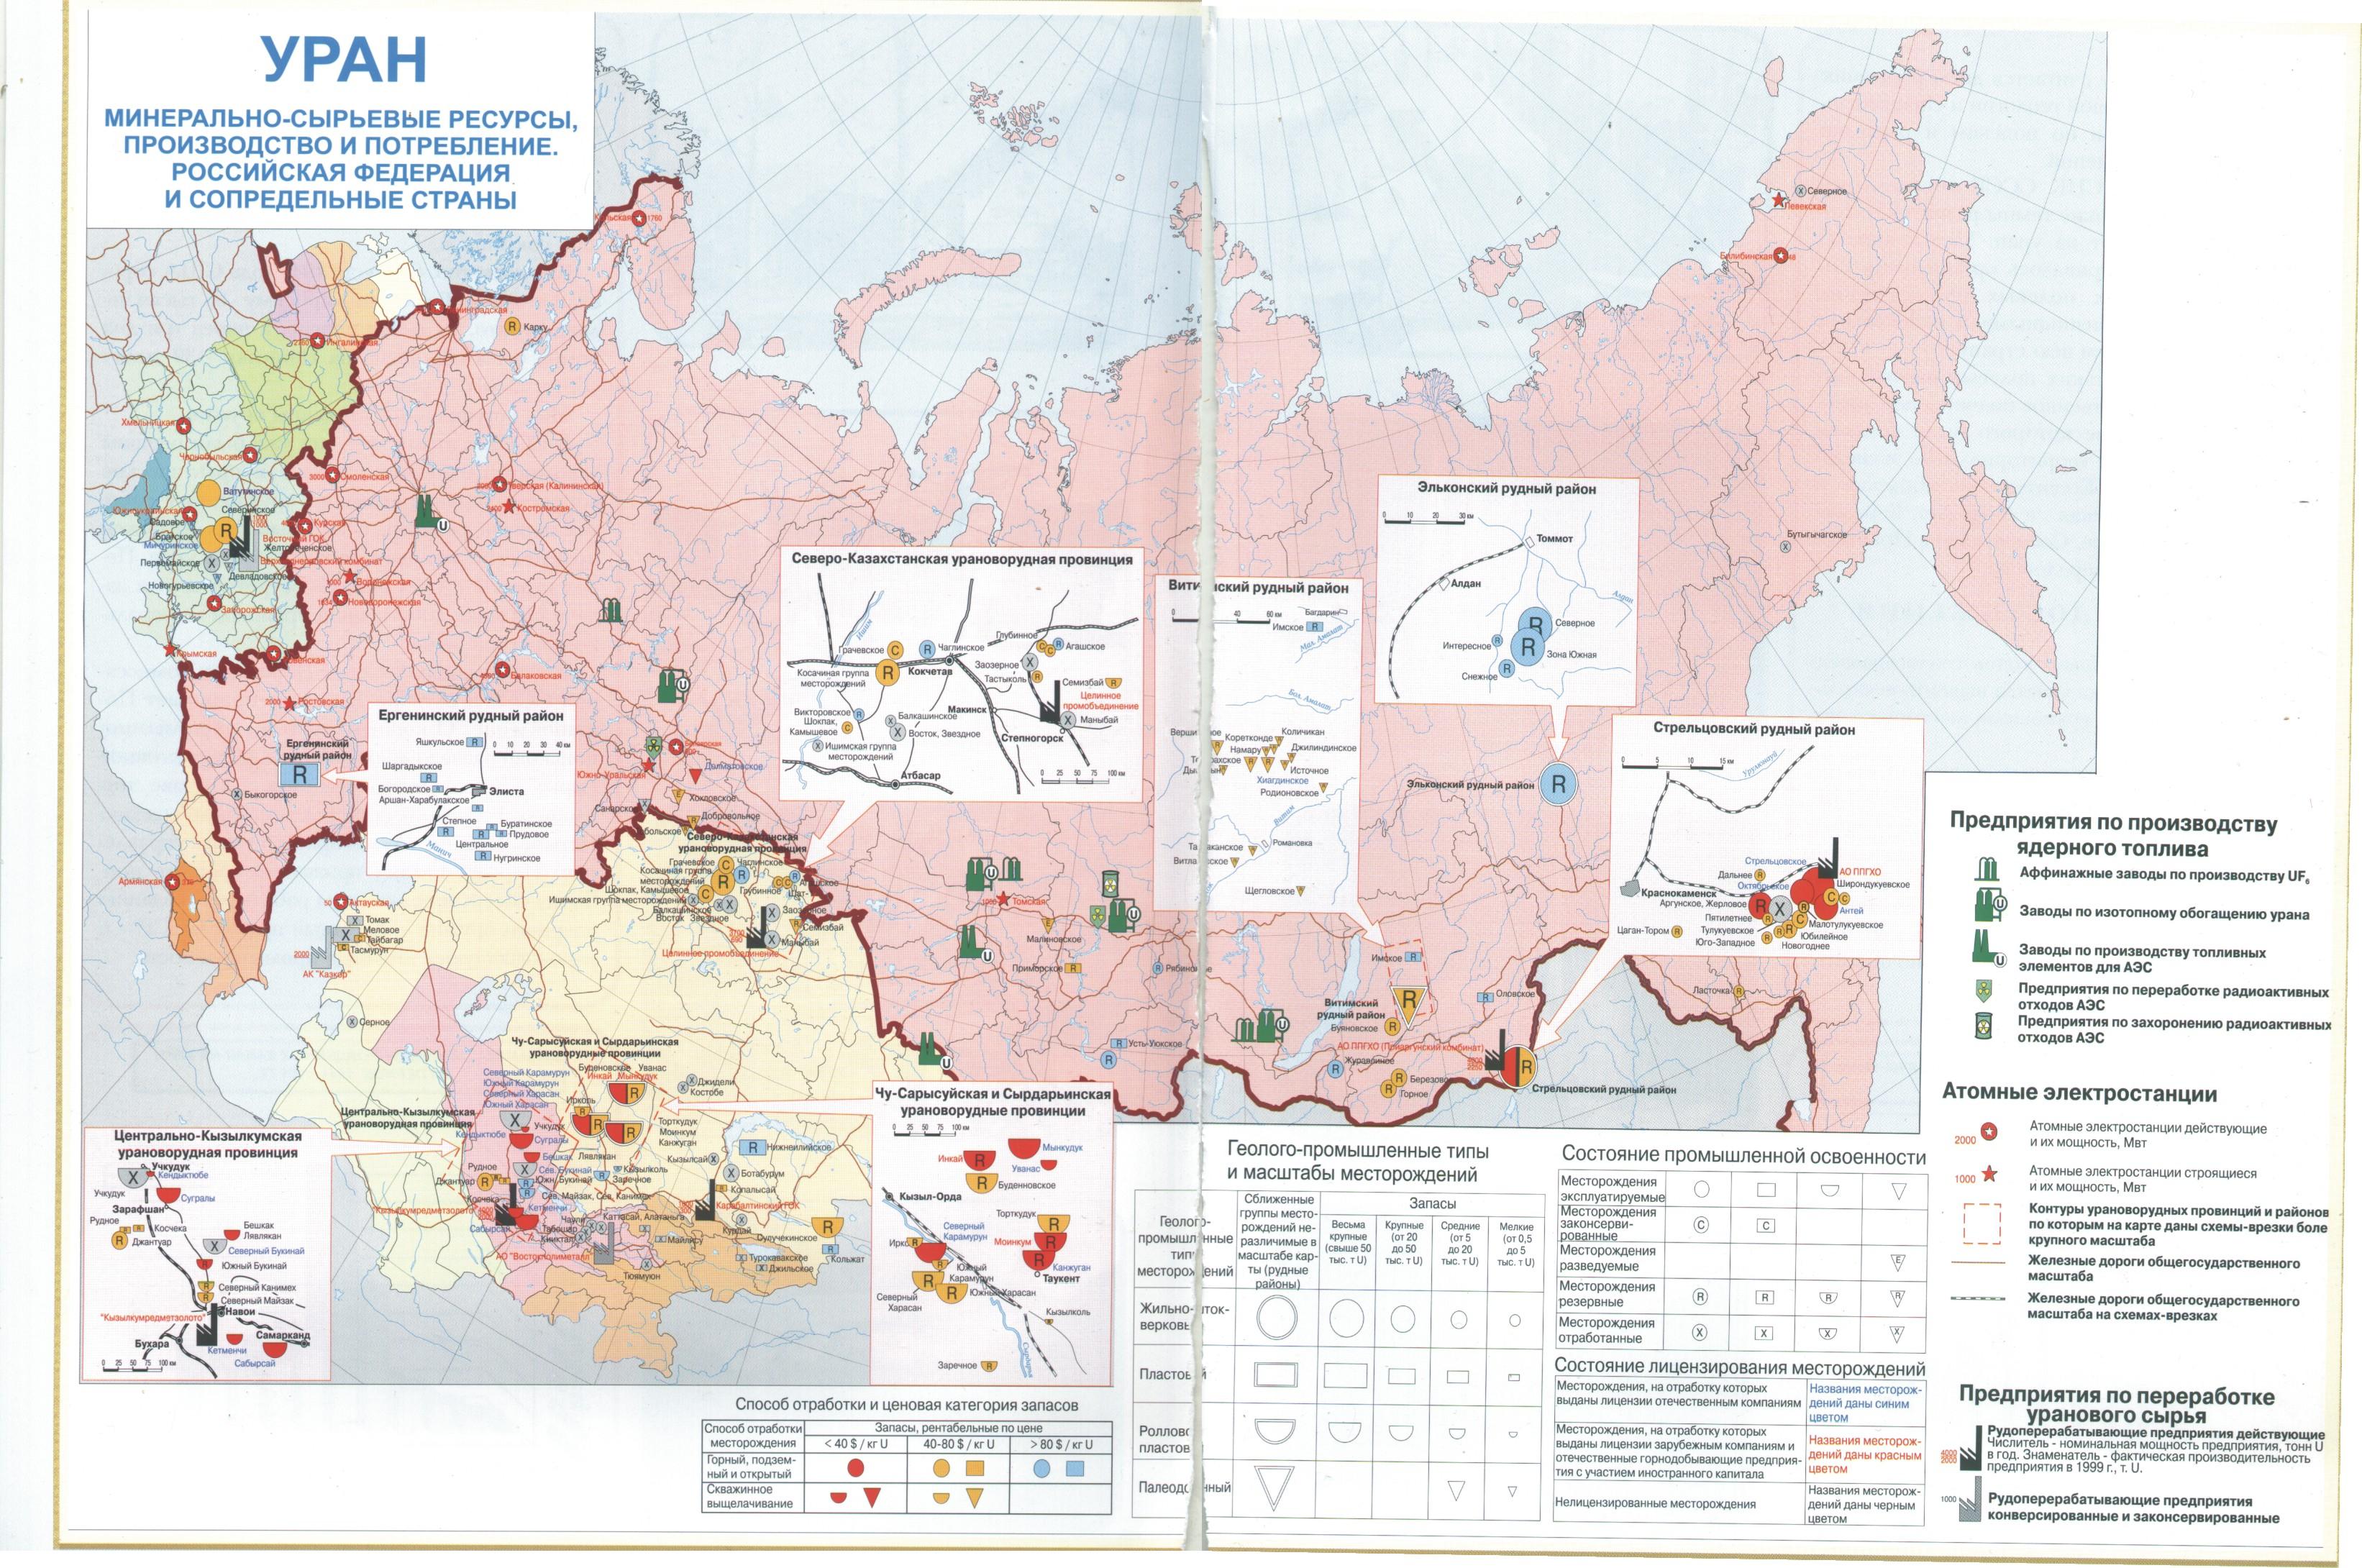 Месторождения урана на украине